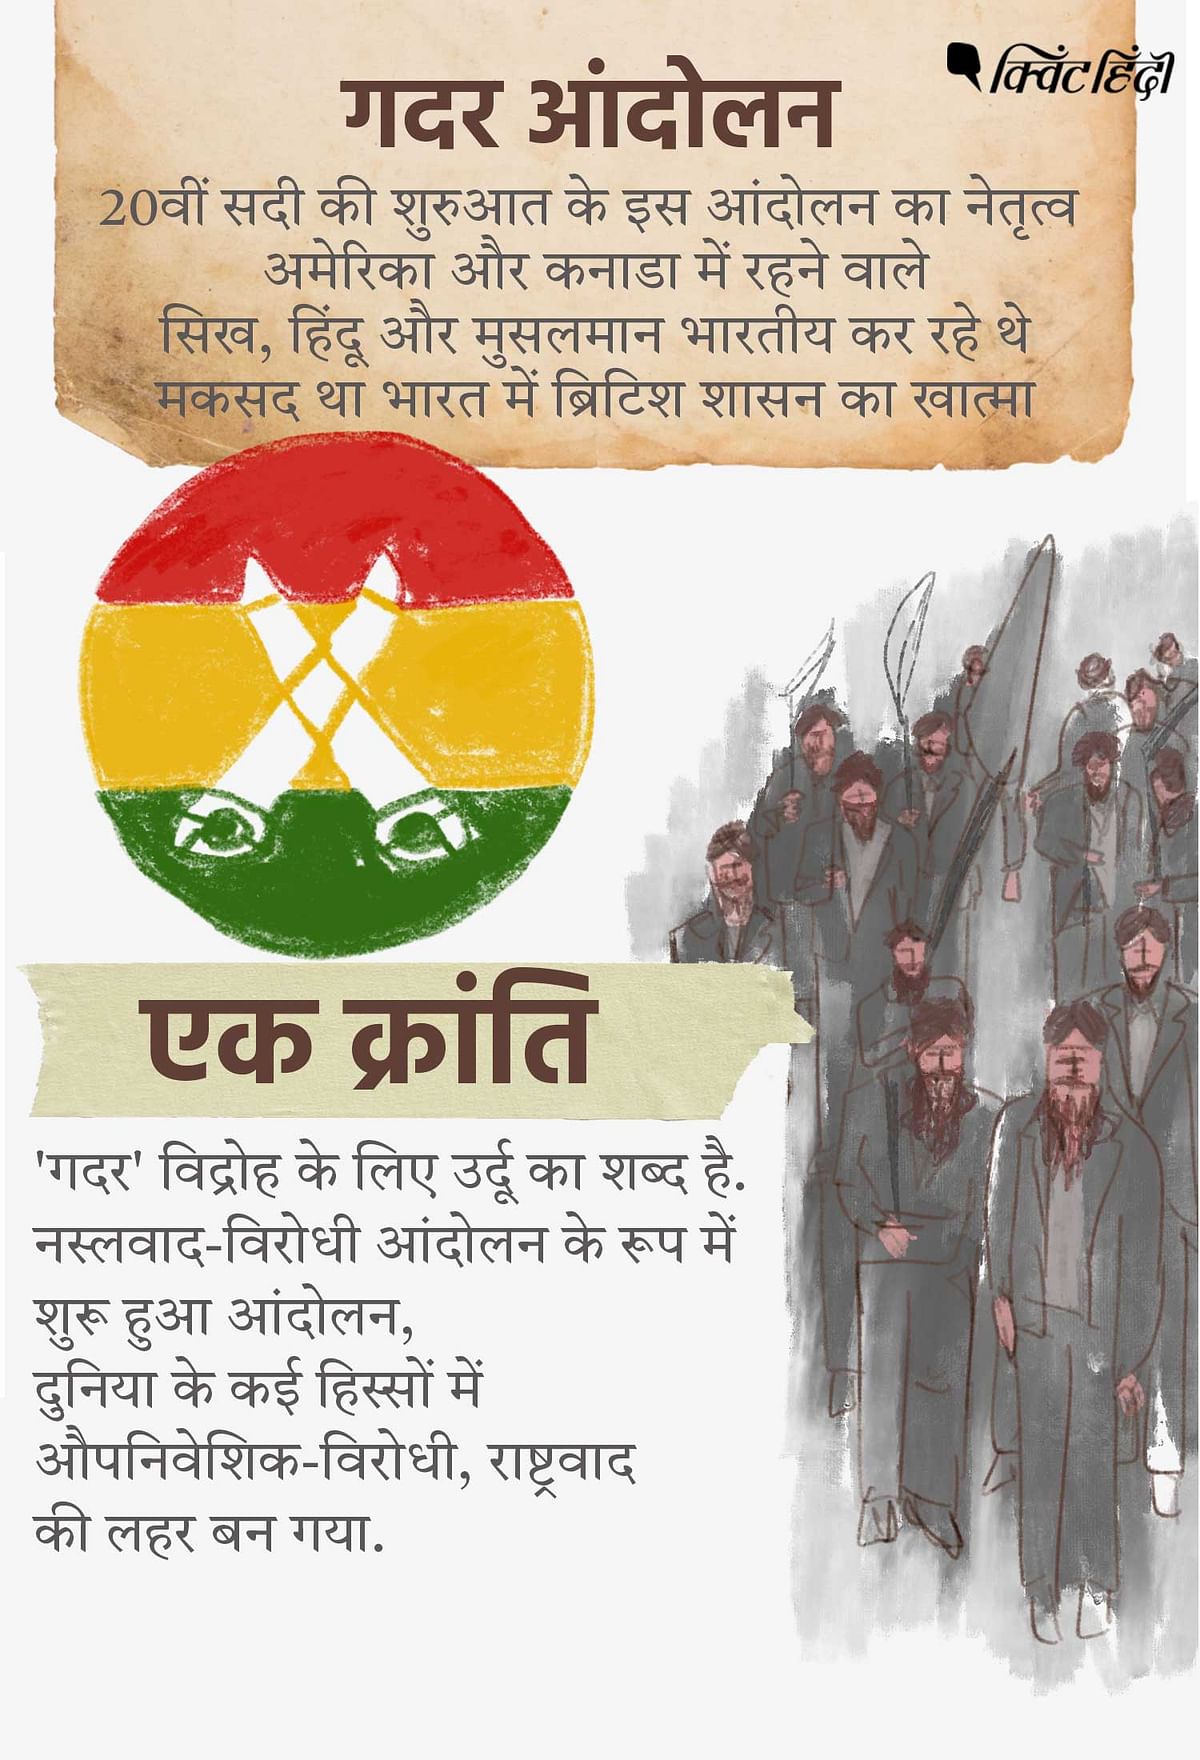 Ghadar Movement भारत के स्वतंत्रता संग्राम के इतिहास में एक मील का पत्थर है.